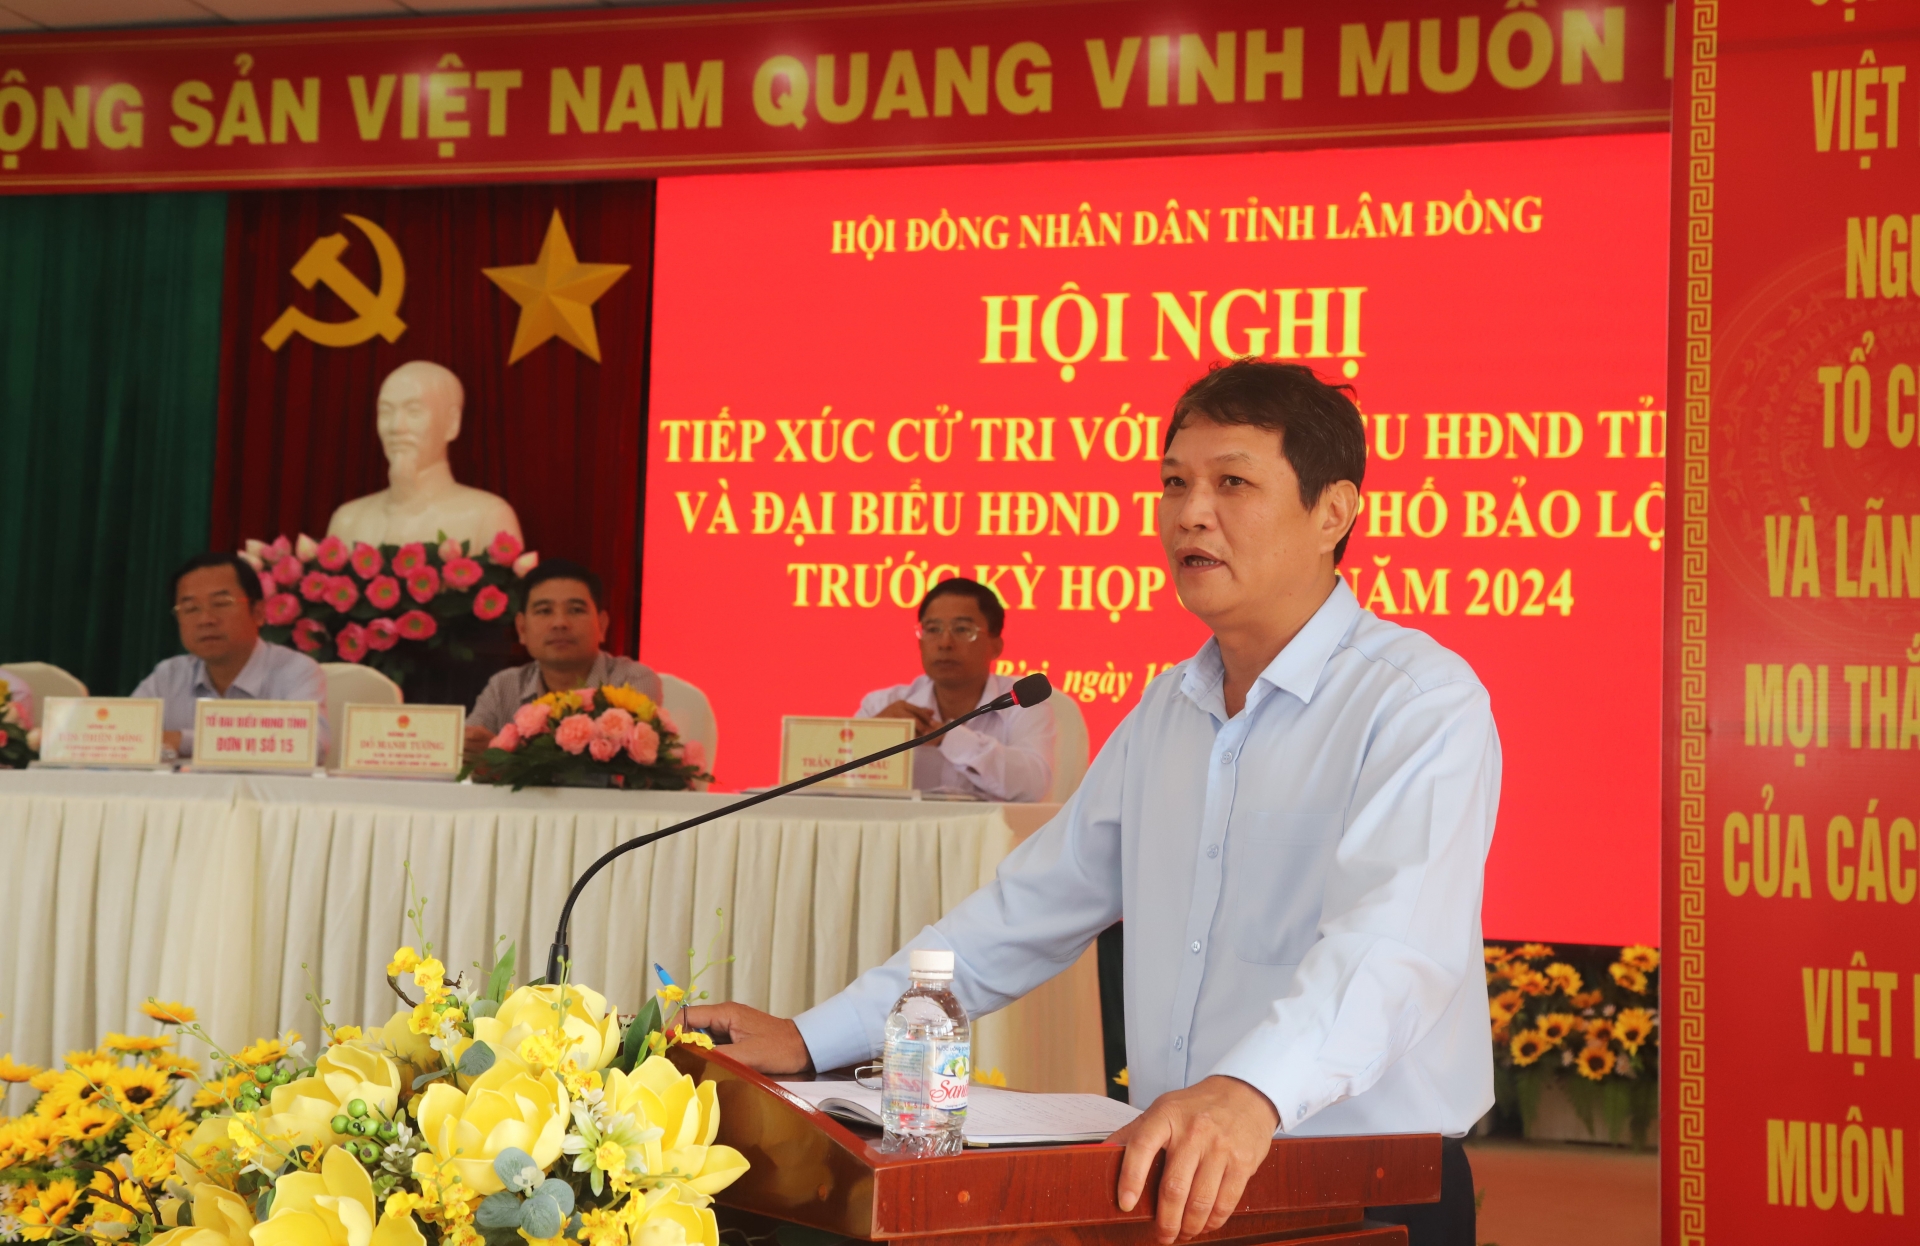 Phó Chủ tịch UBND TP Bảo Lộc Phùng Ngọc Hạp tiếp thu, giải trình ý kiến của cử tri theo thẩm quyền